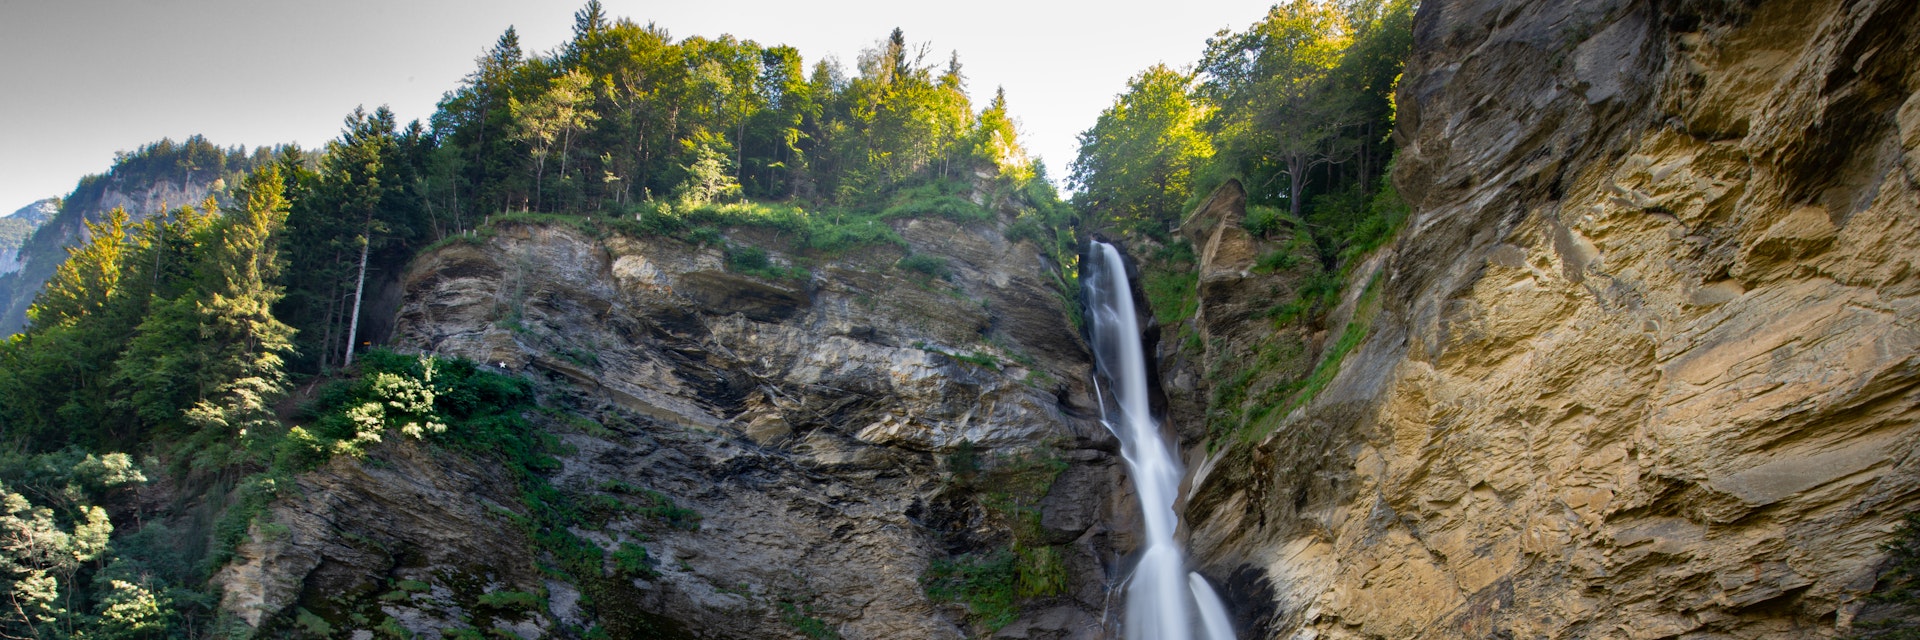 Reichenbach Falls in Switzerland.